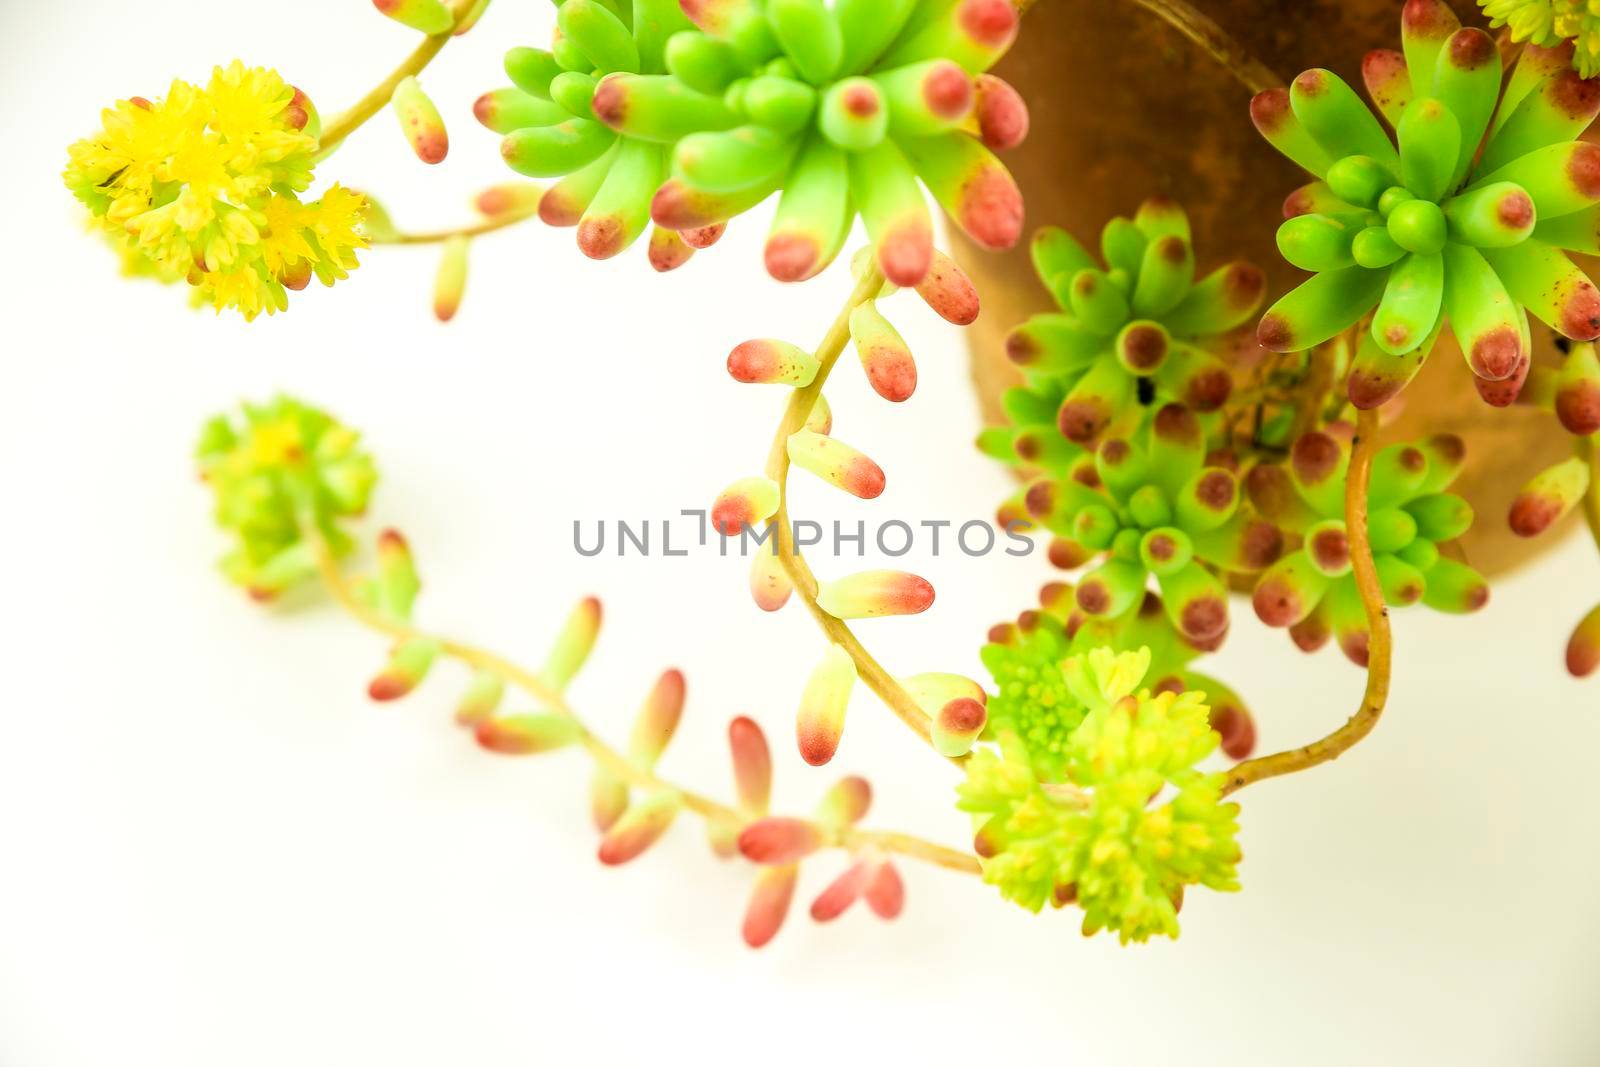 Colorful Sedum rubrotinctum R.T Clausen plant on white background